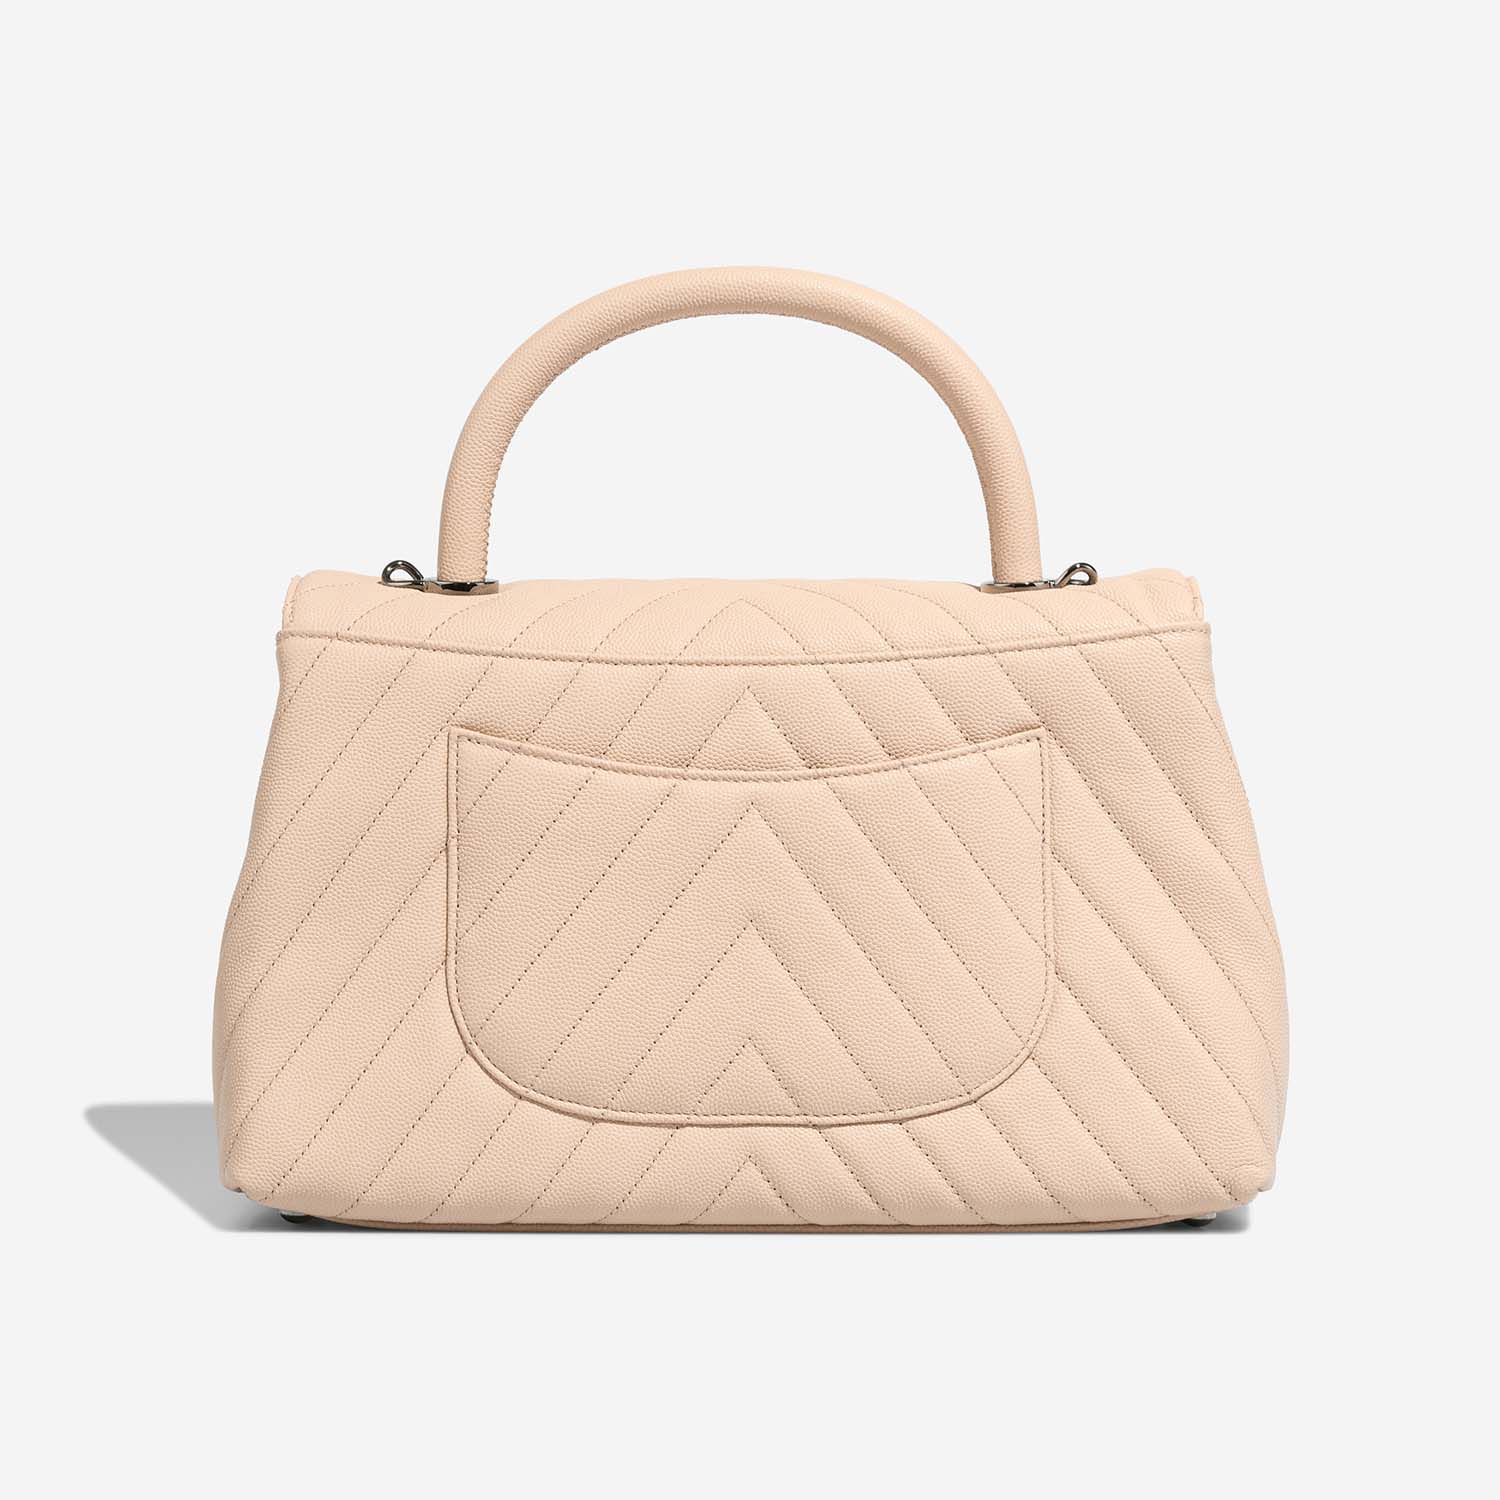 Chanel TimelessHandle Medium Beige Back  | Sell your designer bag on Saclab.com